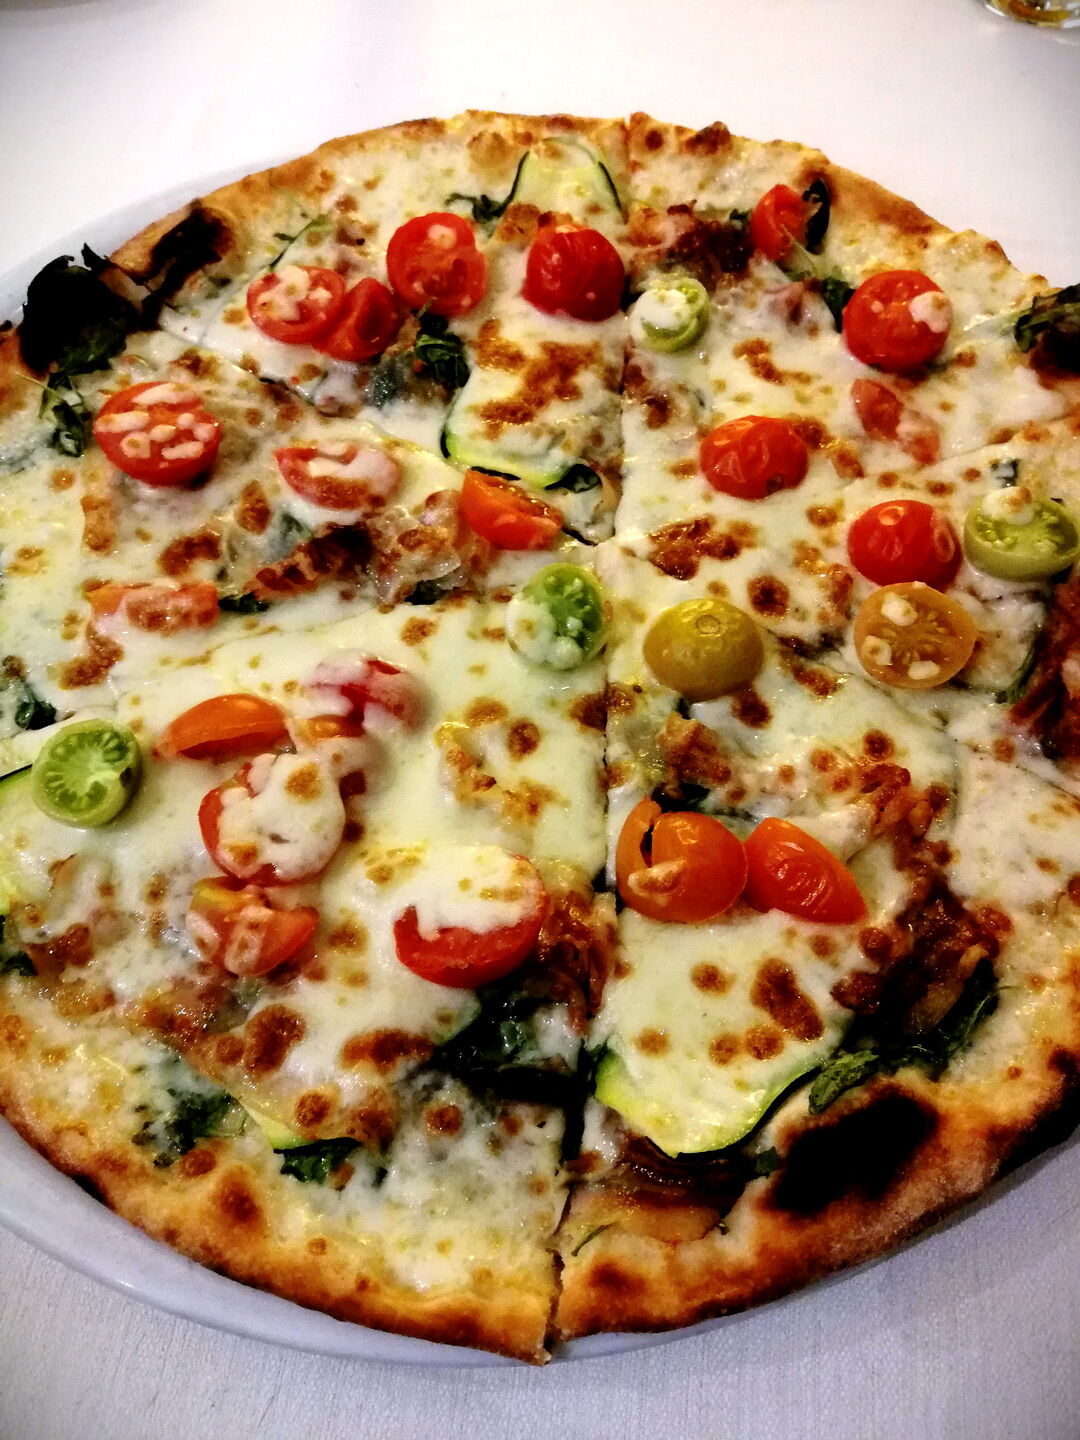 La Pizza Vegetariana Ristorante Chalet Lido Nordest Ristorante Di Pesce Pizzeria Spiaggia Mare Grottammare San Benedetto Del Tronto Ascoli Piceno Marche